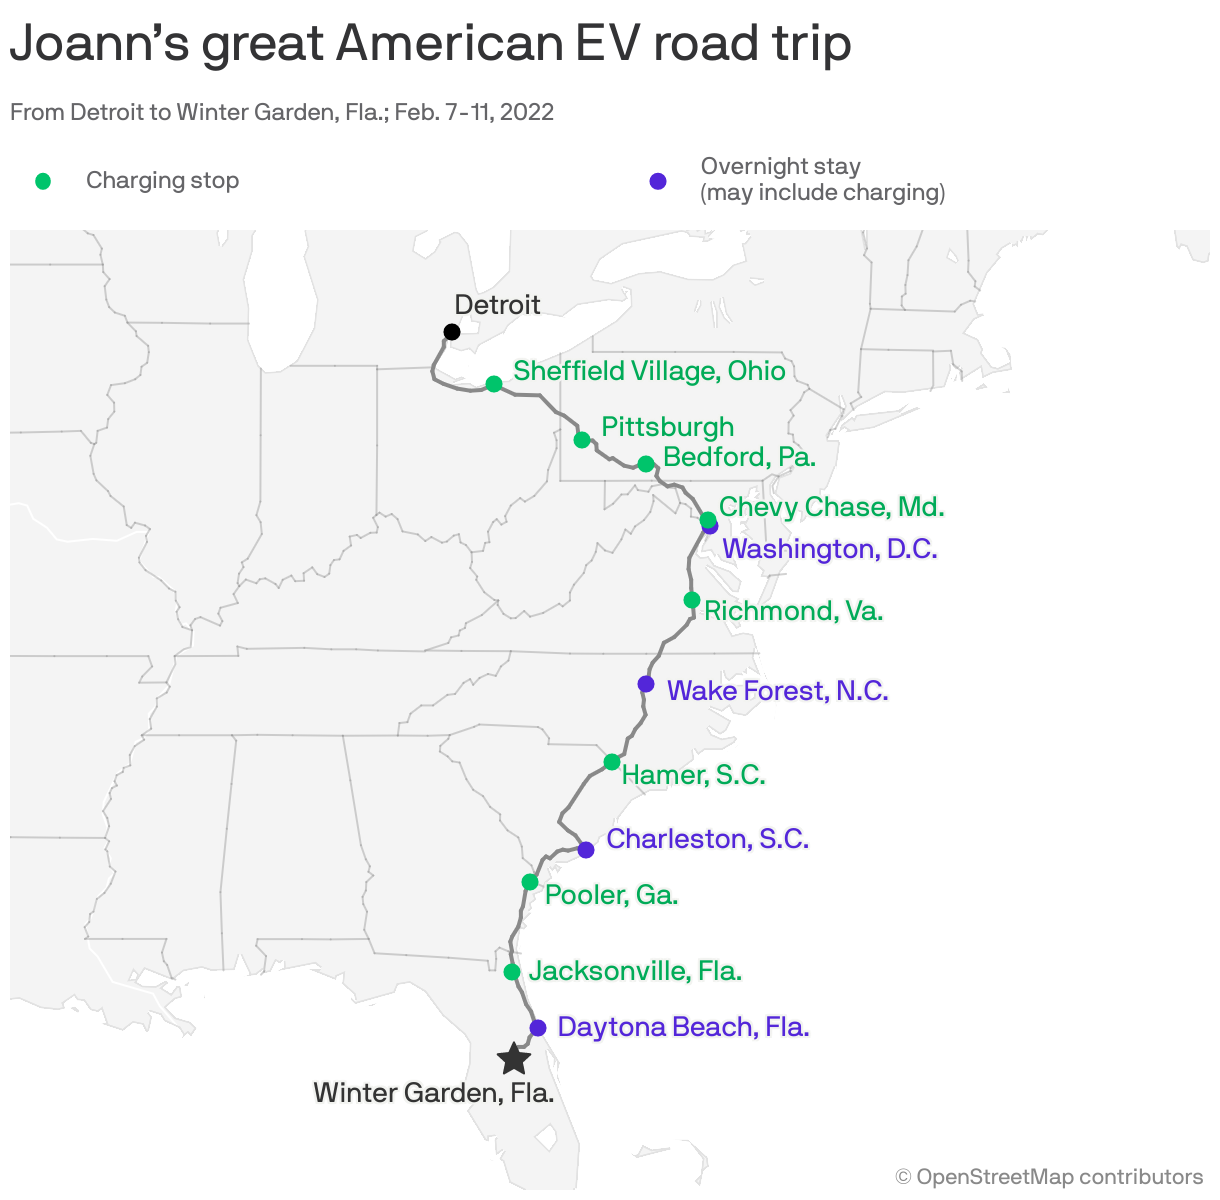 Joann’s great American EV road trip